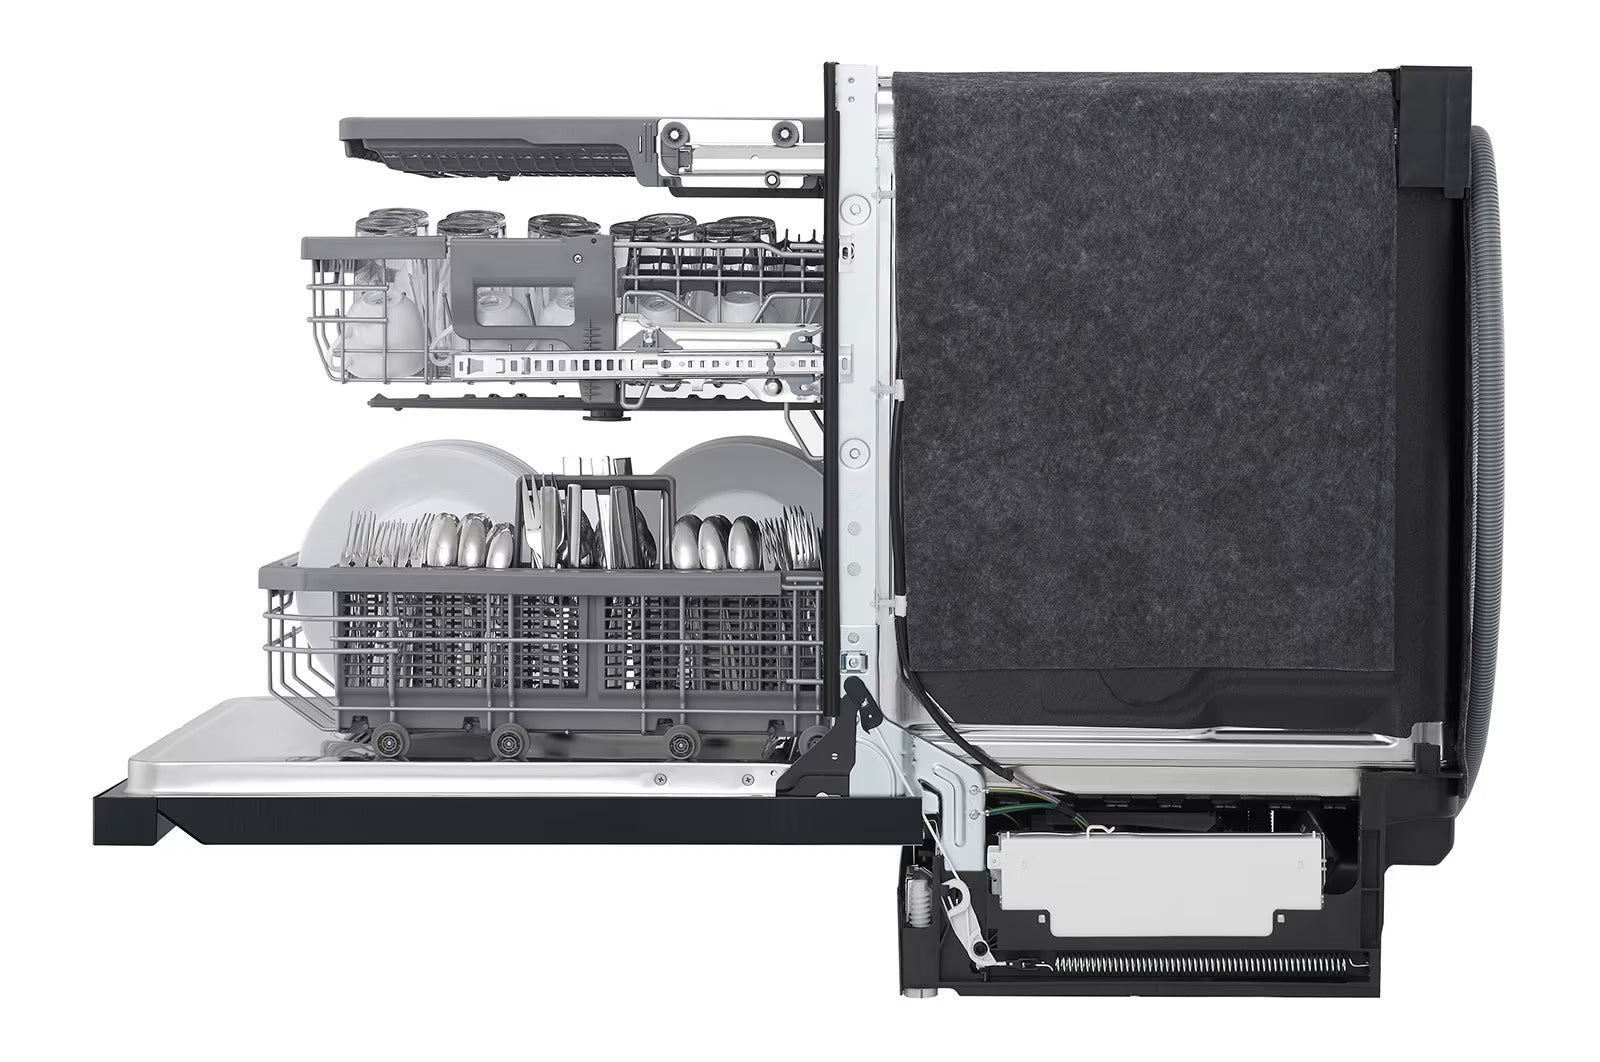 LG - 44 dBA Built In Dishwasher in Black - LDP6810BM